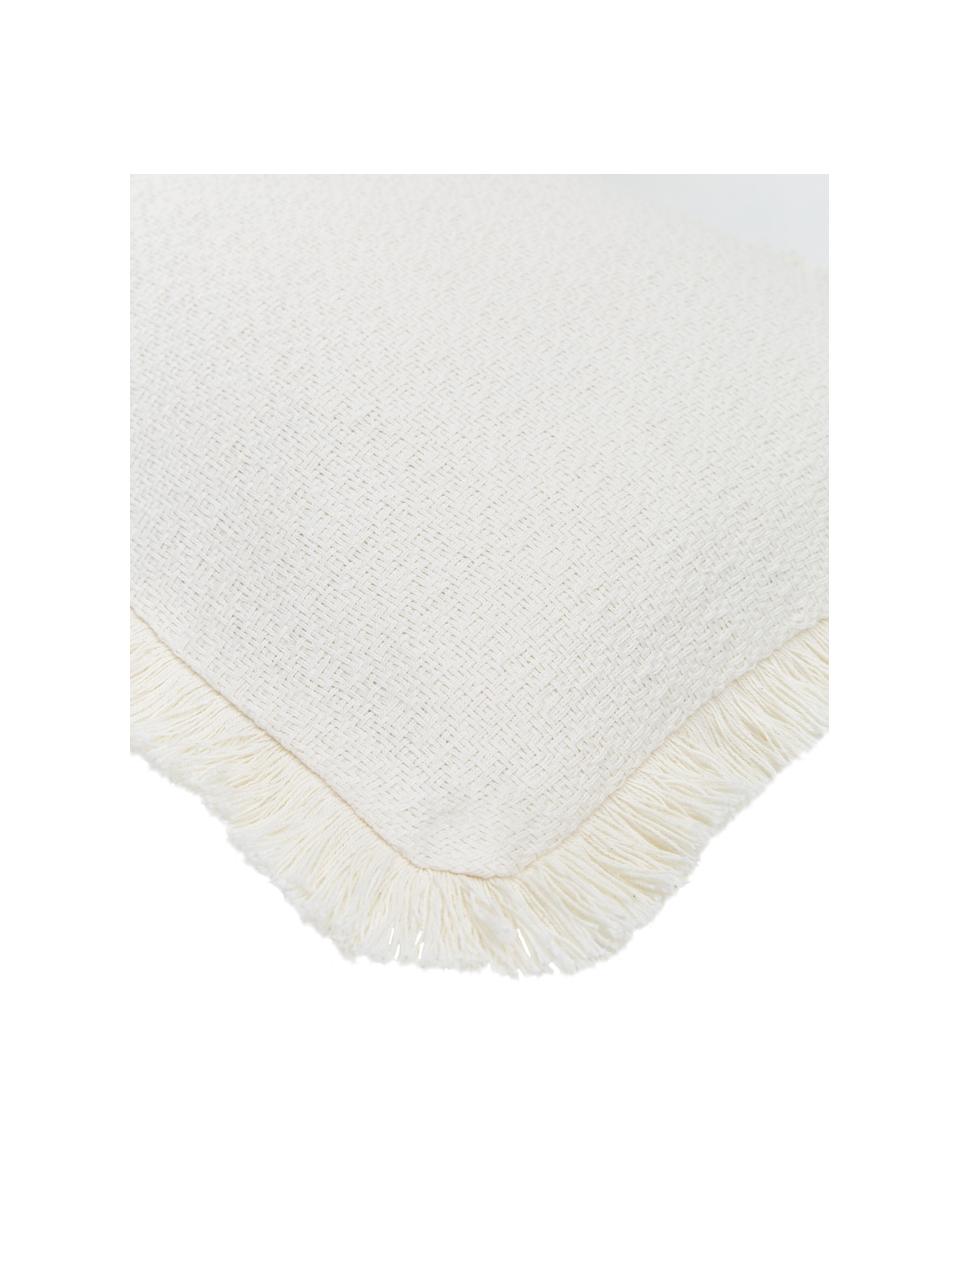 Poszewka na poduszkę Lorel, 100% bawełna, Biały, S 30 x D 50 cm